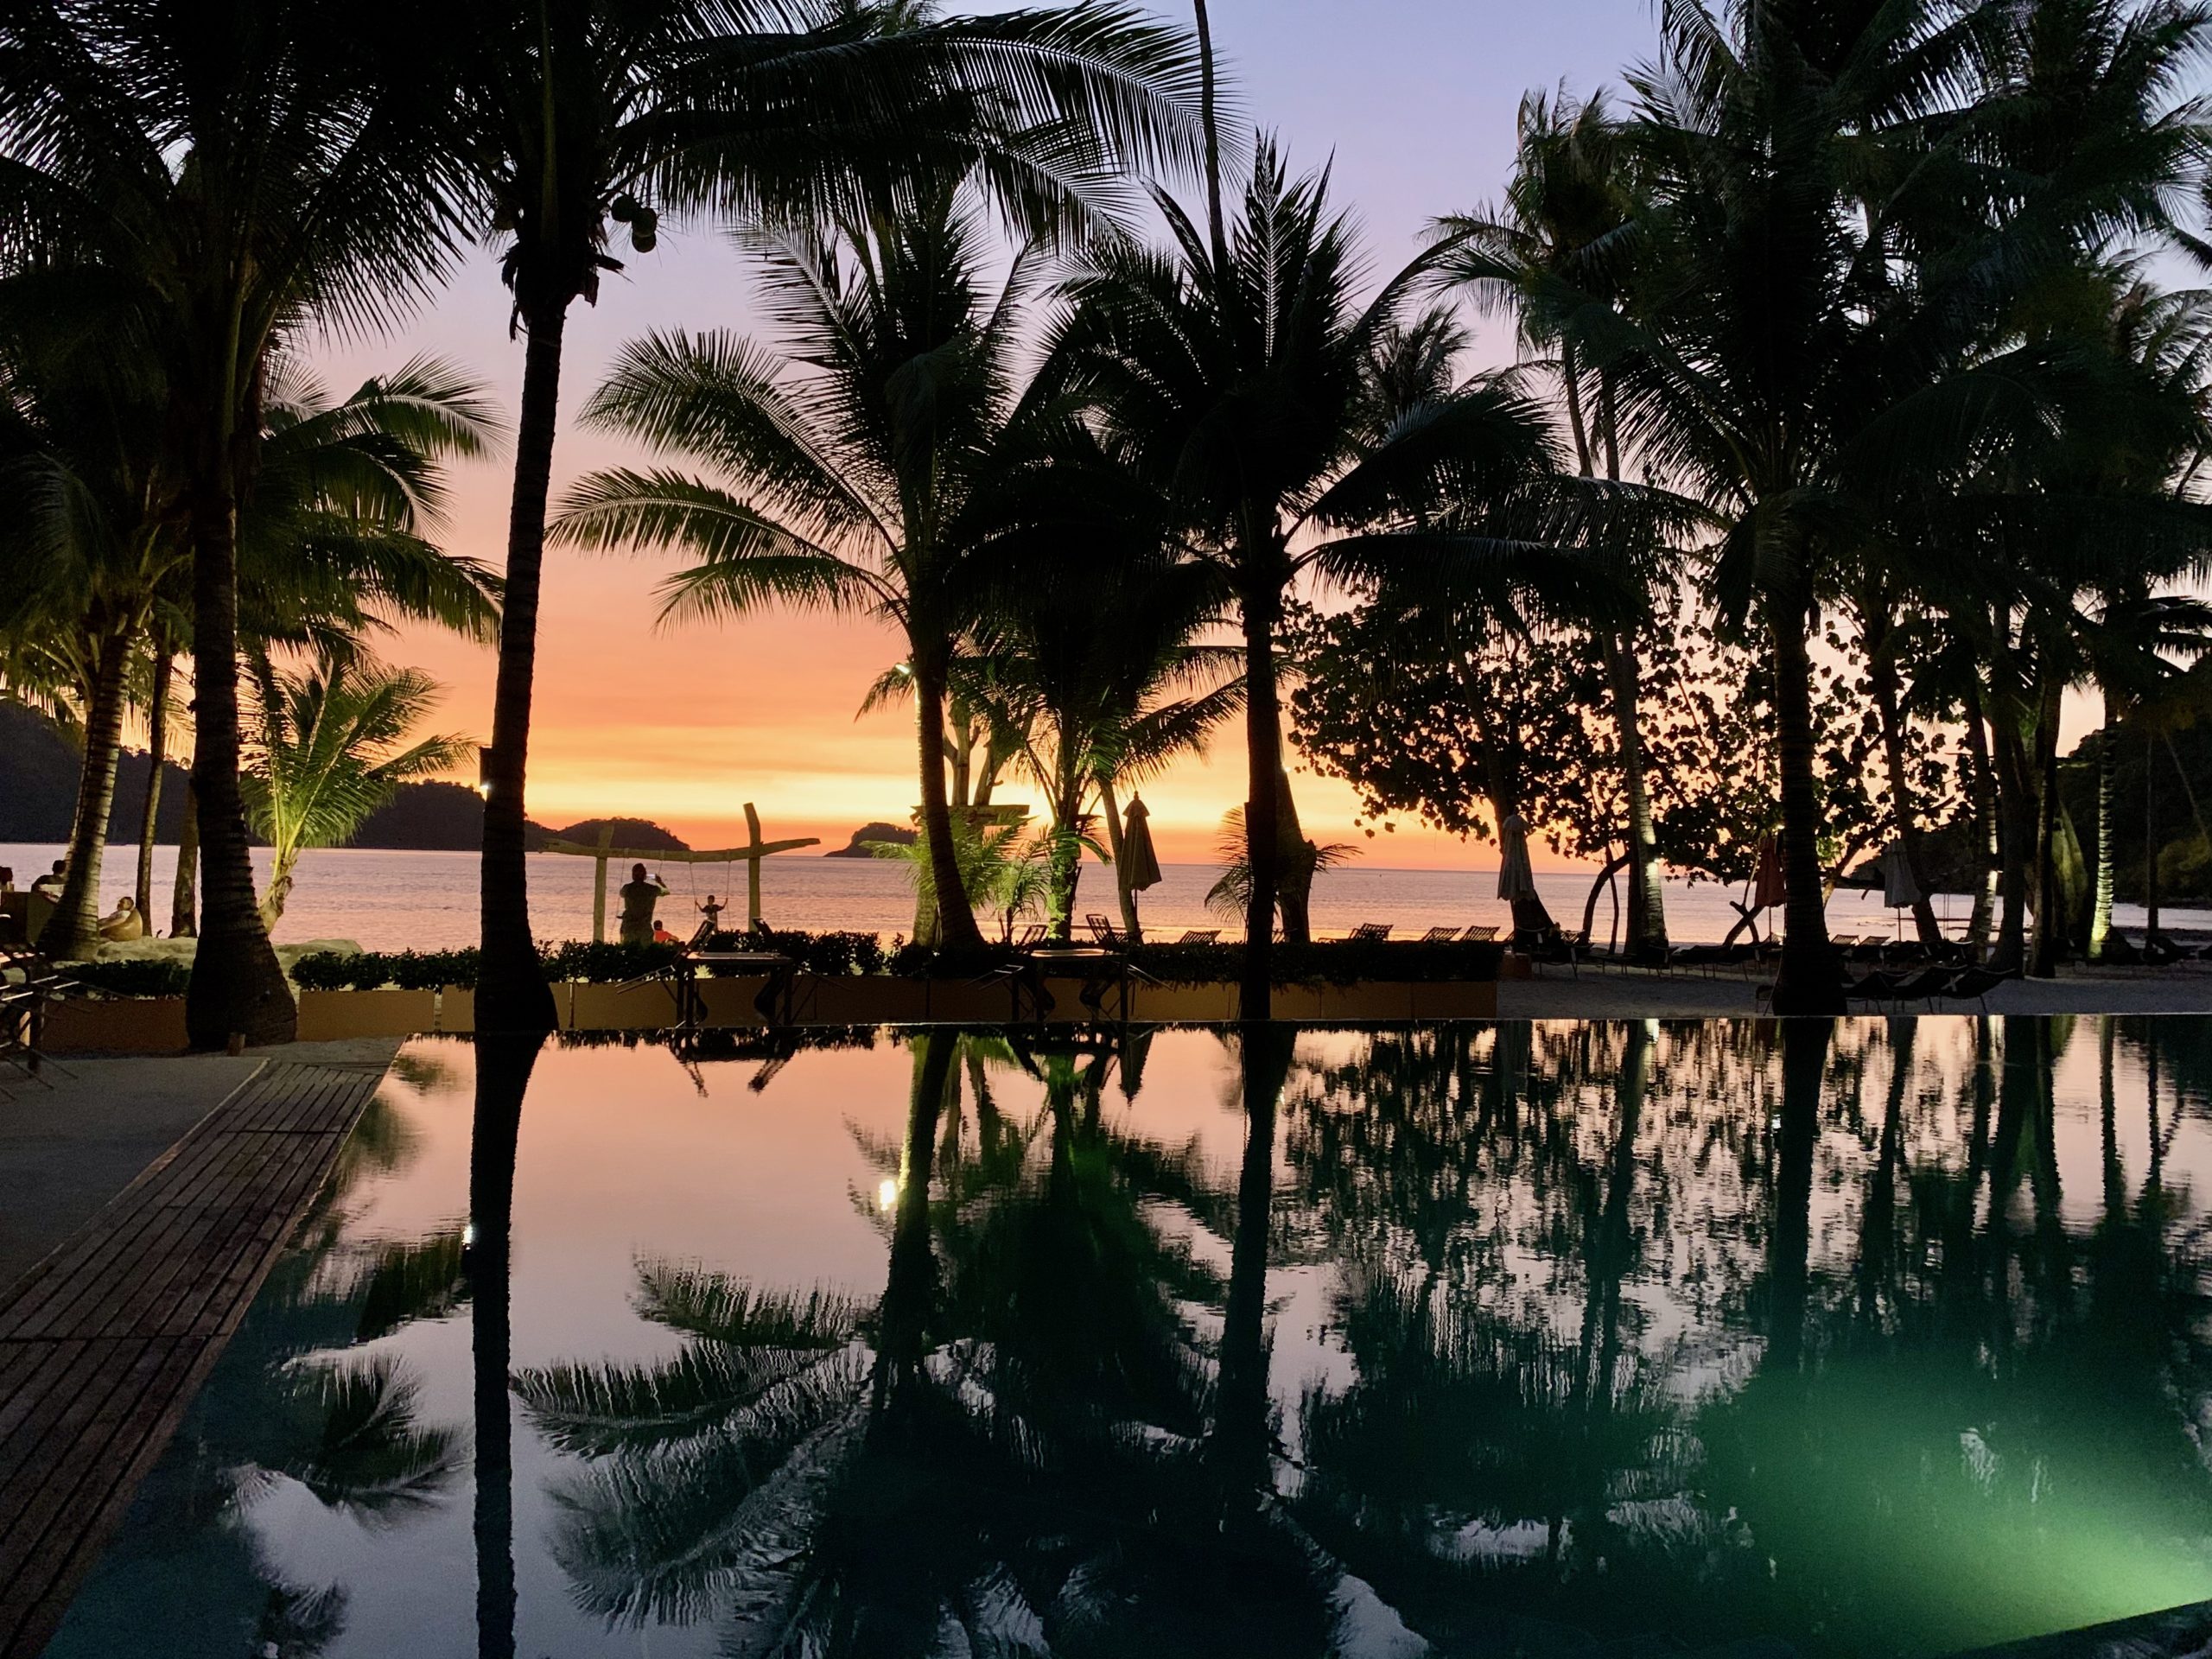 Coucher de soleil à Koh Chang avec piscine et palmiers en silhouette